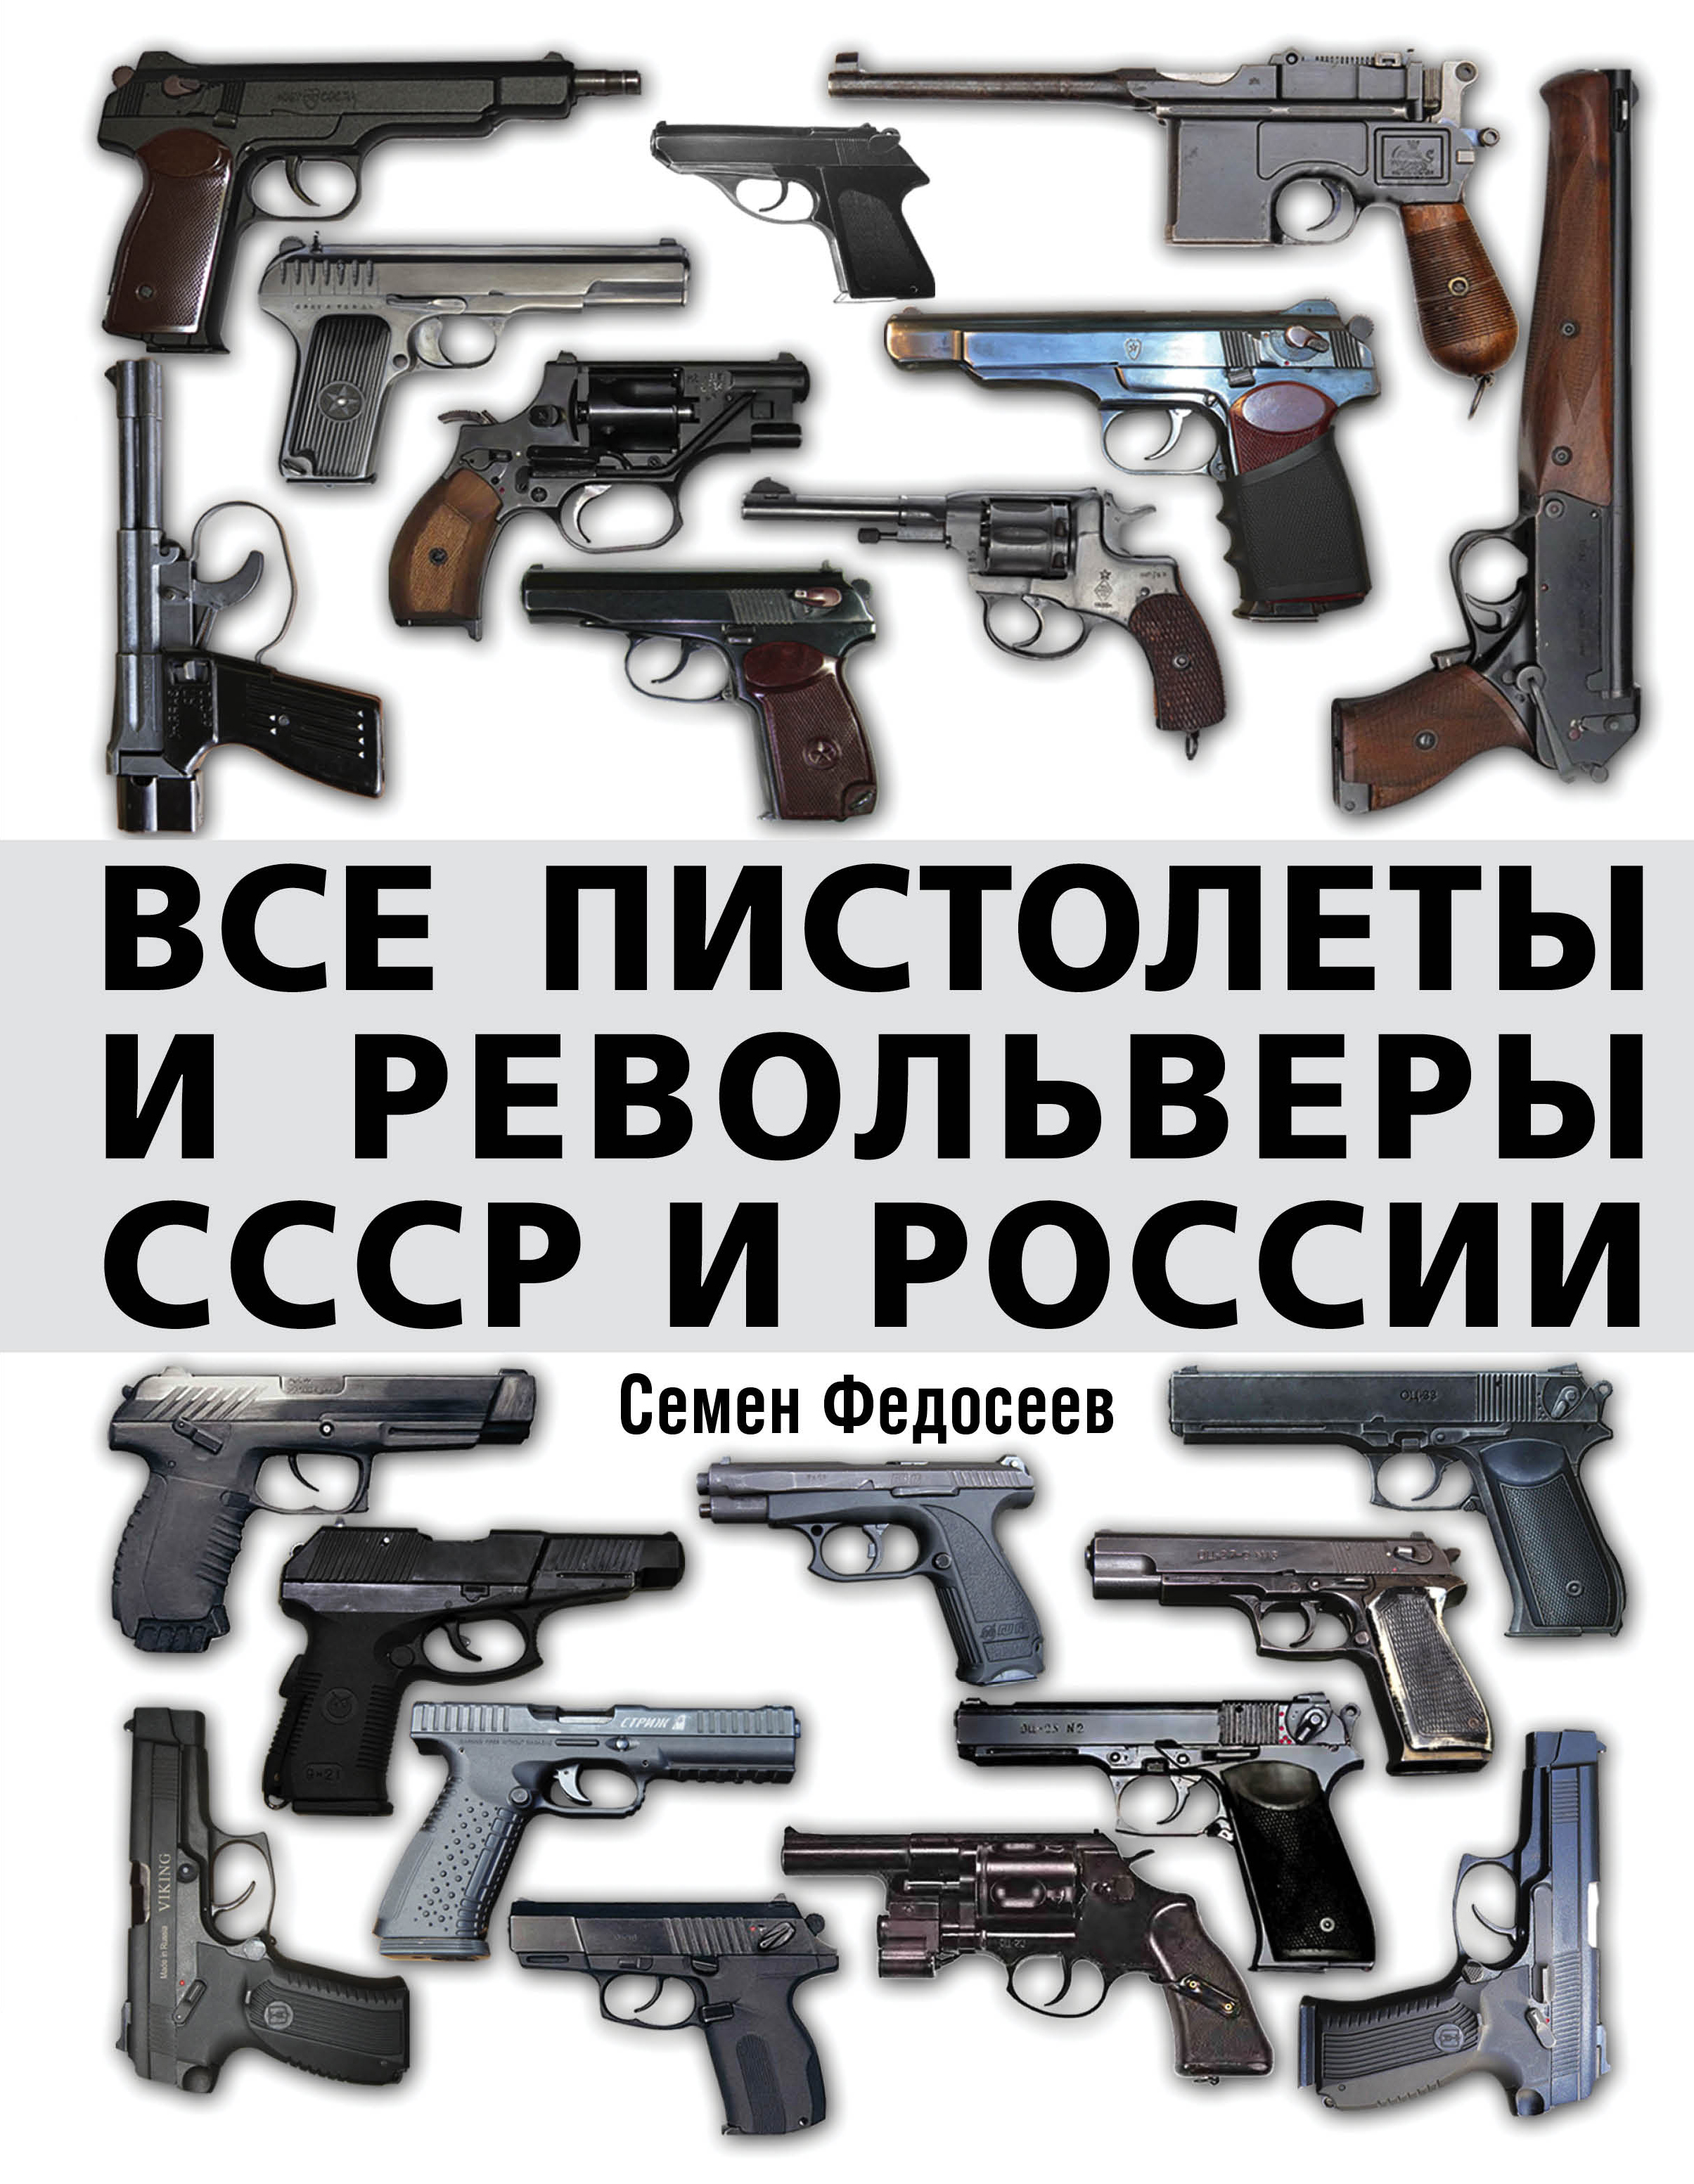 Федосеев, Семен. Пистолеты и револьверы в России